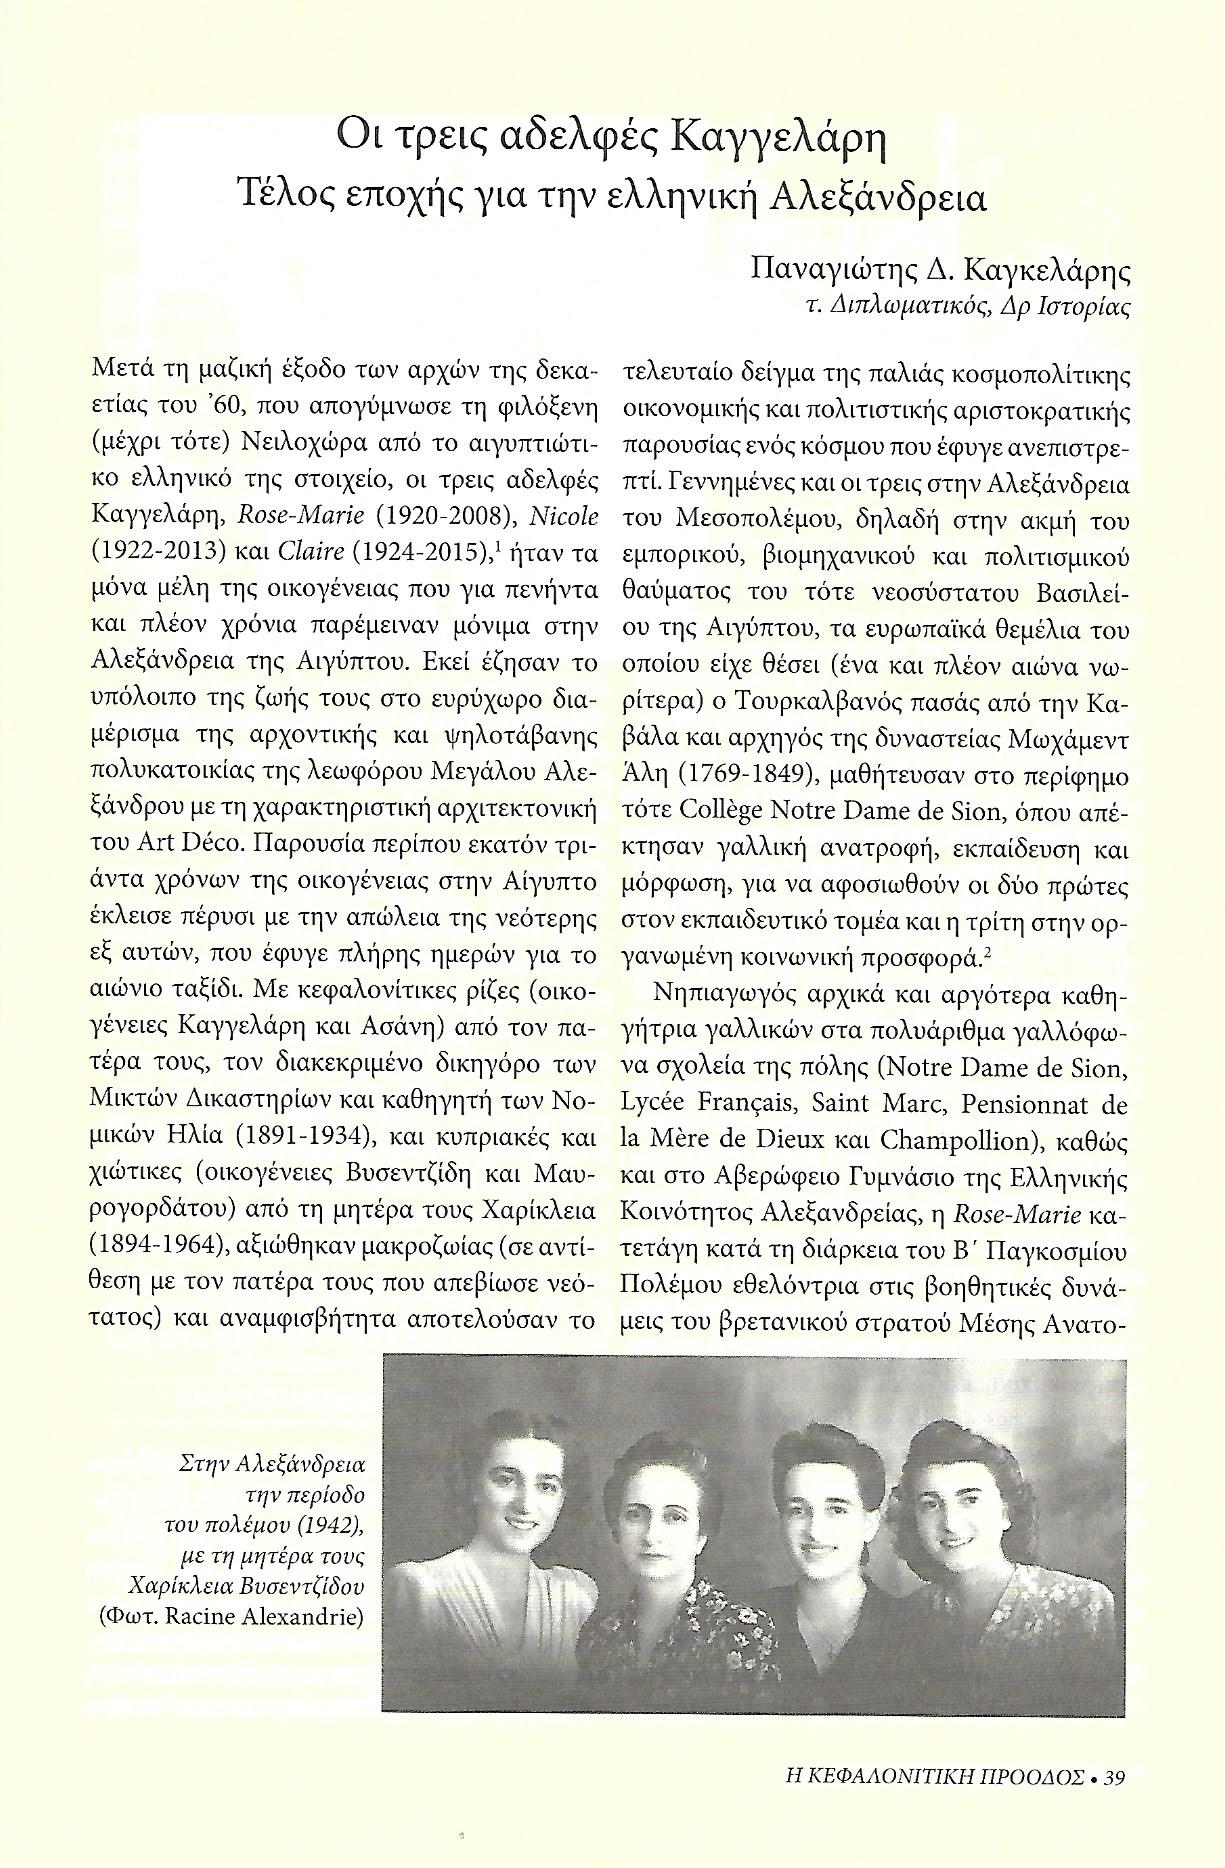 Τρεις αδελφές Καγγελάρη , Κεφαλονίτικη Πρόοδος, Β-17, σελ. 39